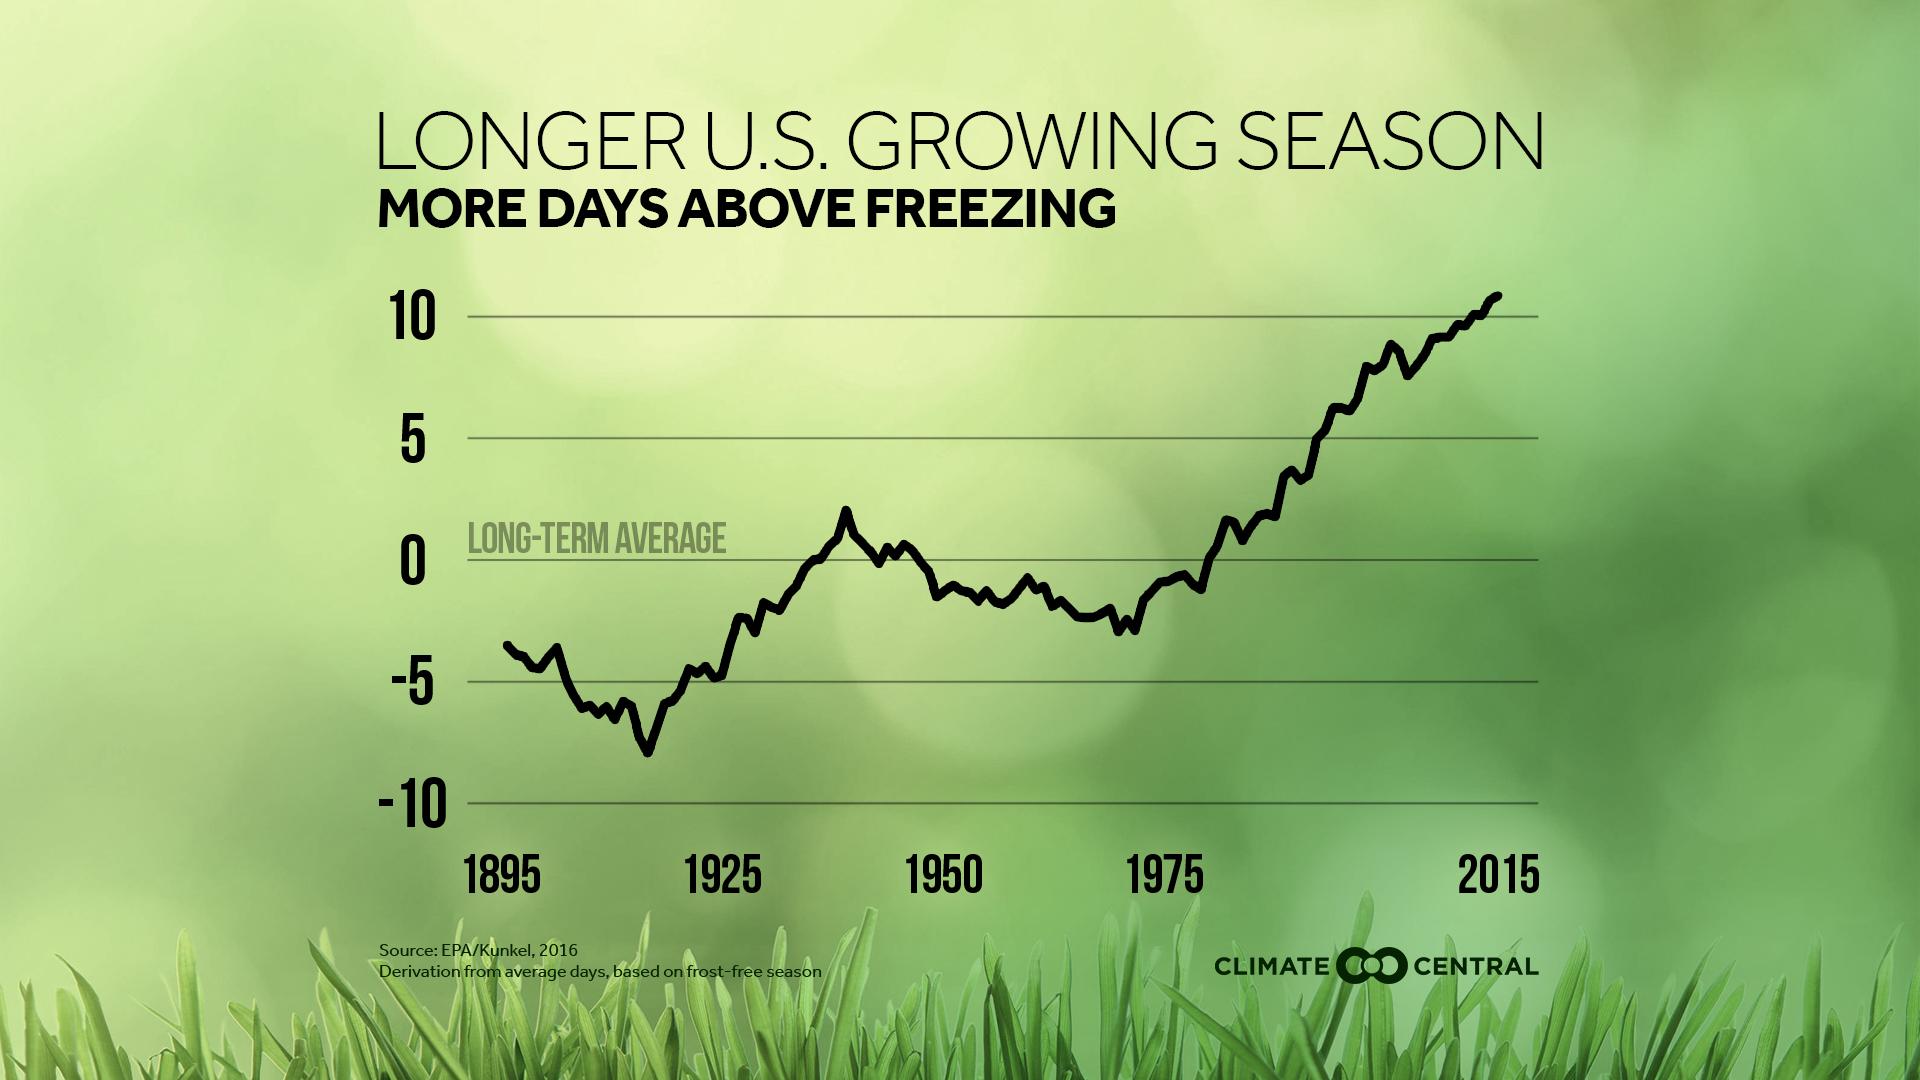 U.S. growing season